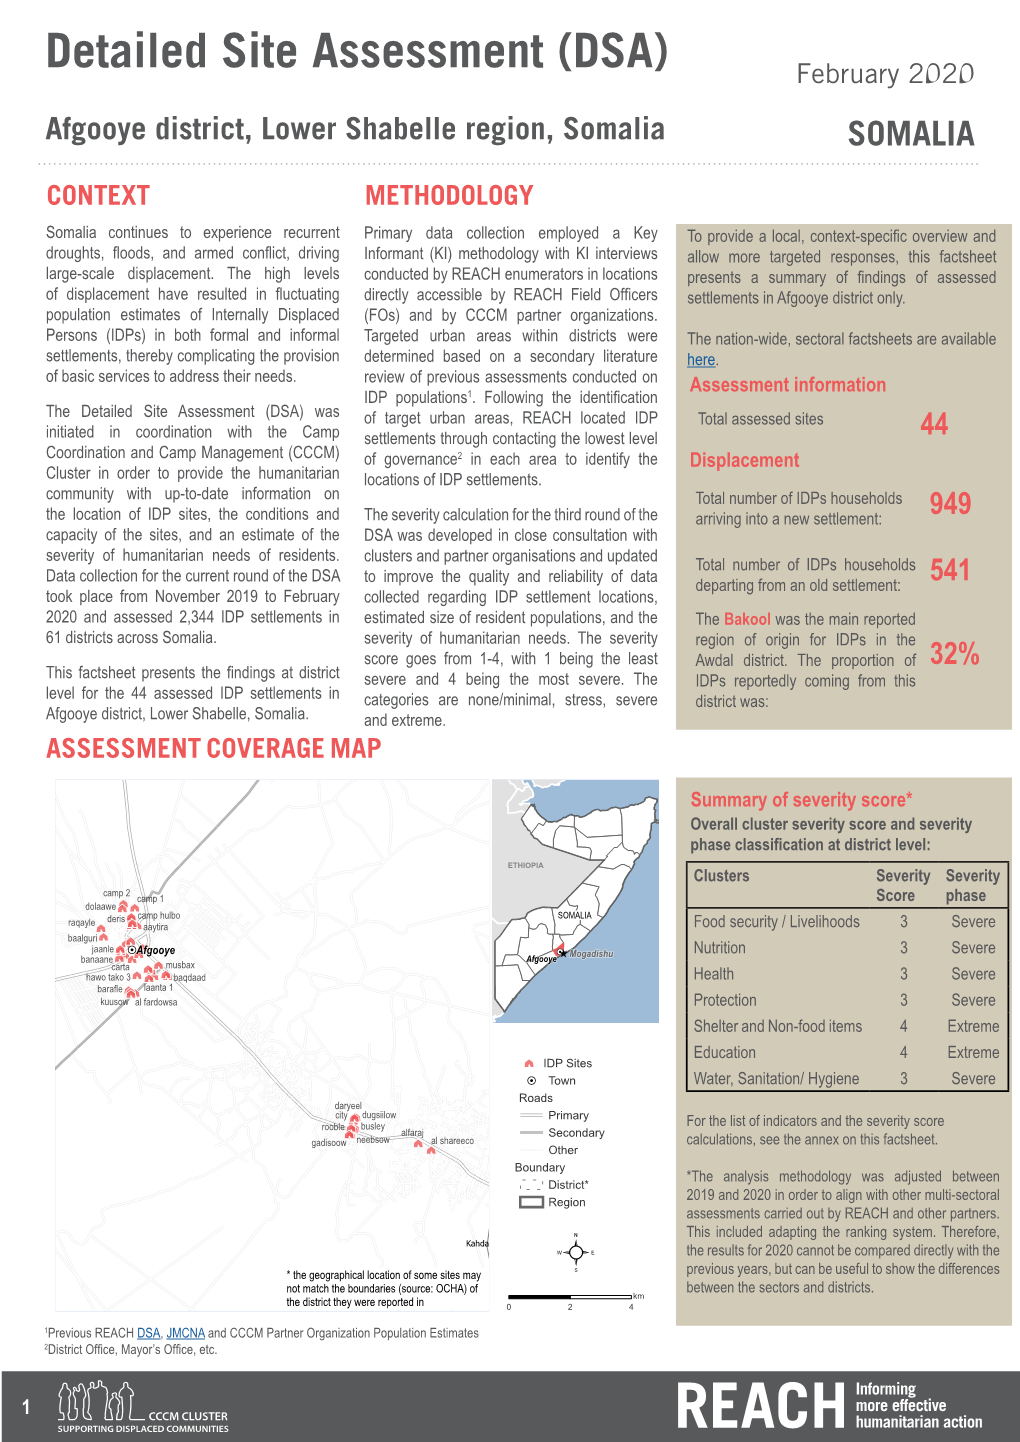 Detailed Site Assessment (DSA) Afgooye District, Lower Shabelle Region, Somalia